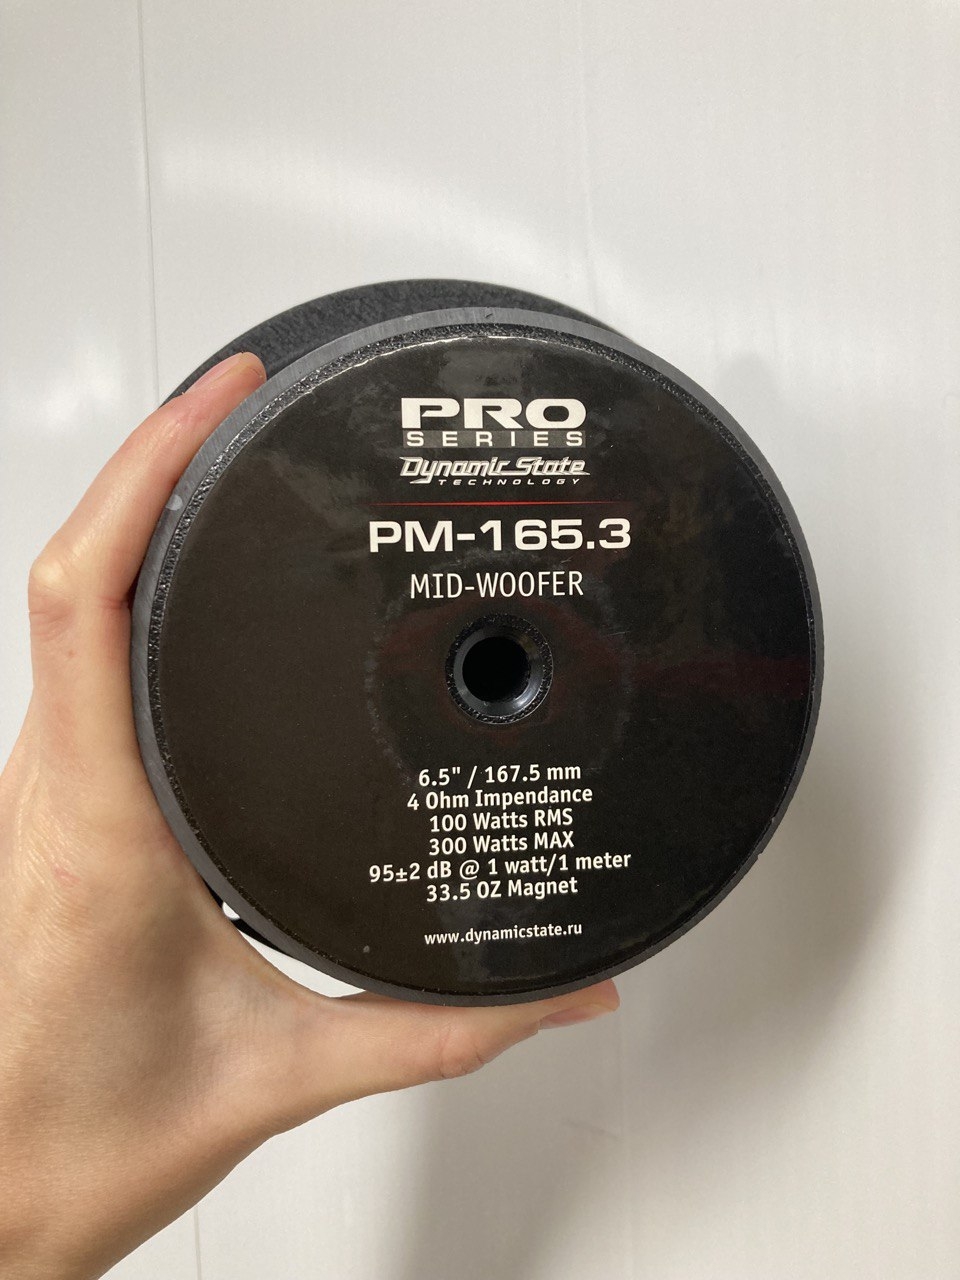 Динамики мидрейндж Dynamic State PM-165.3 PRO Series